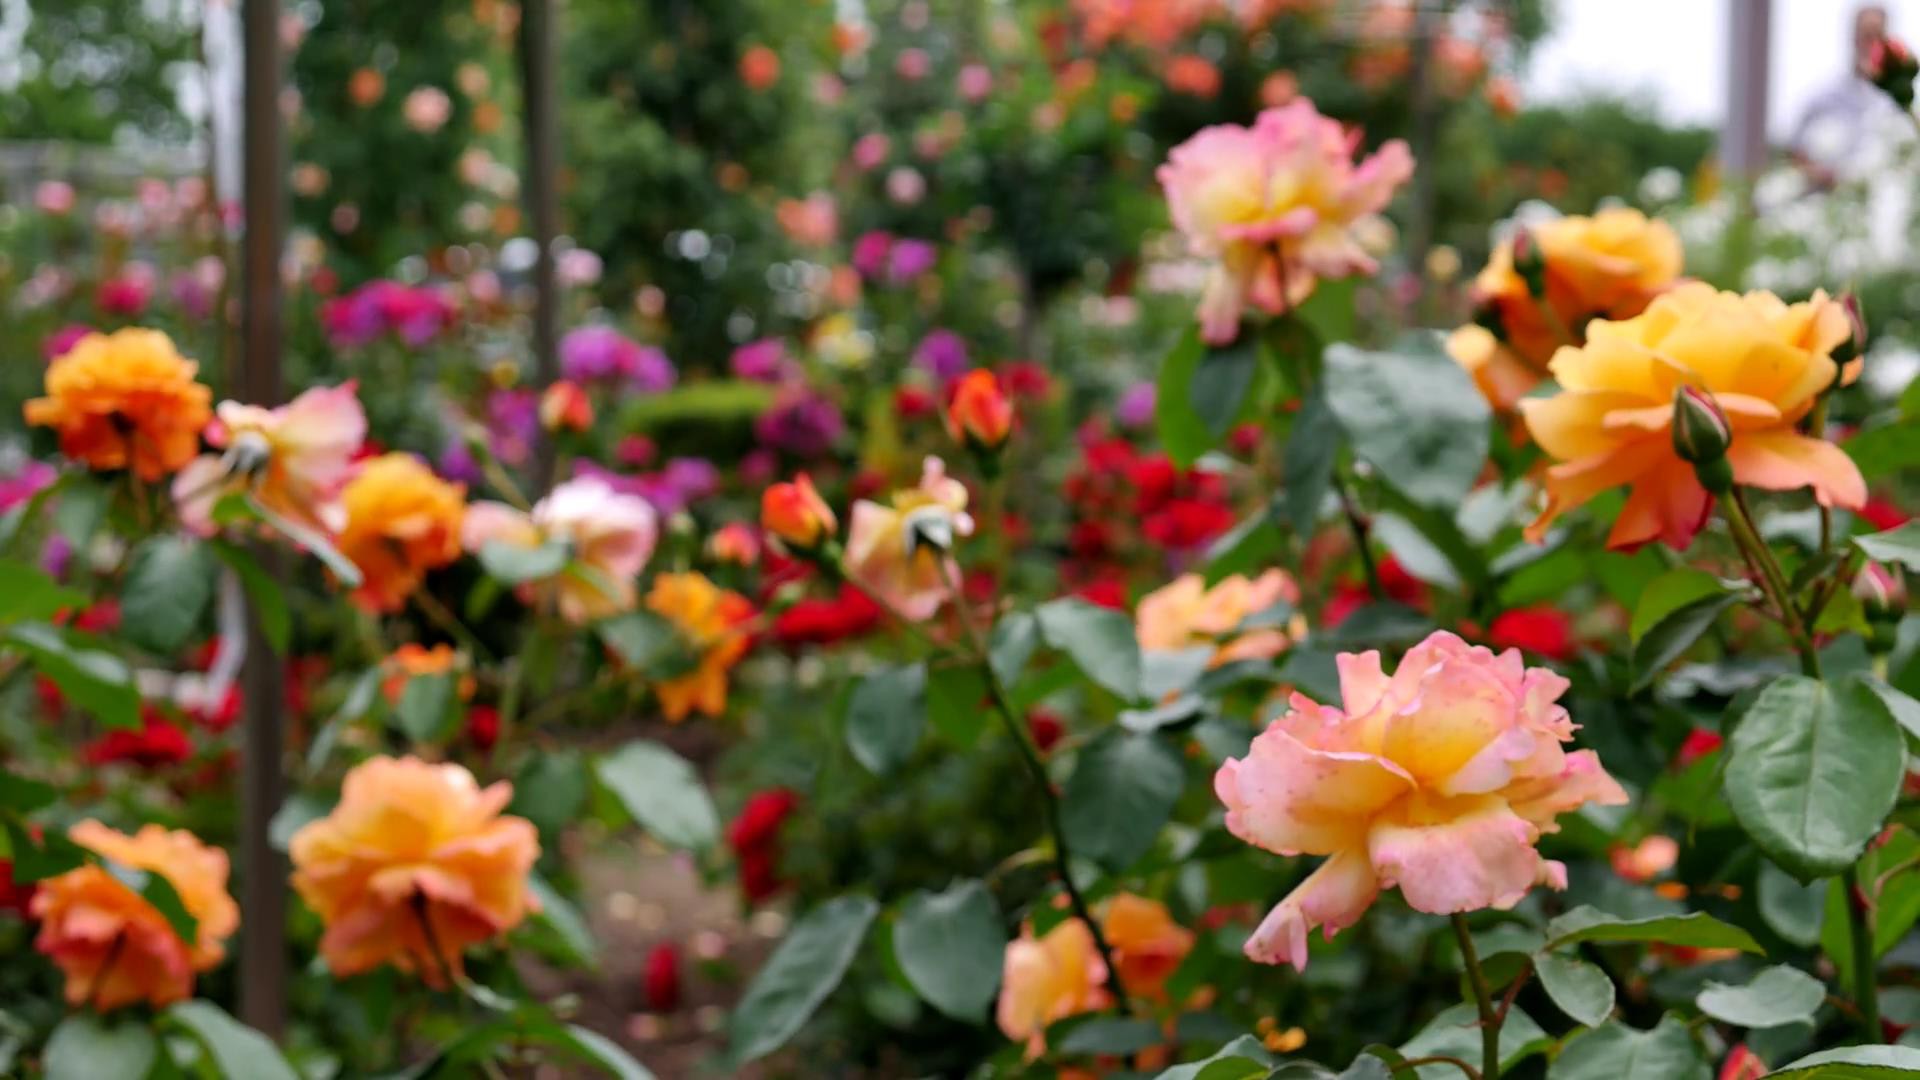 Đến thăm khu vườn trên đảo ở Nhật Bản với 2.600 cây hoa hồng rung rinh trước gió đẹp mê mẩn lòng người - Ảnh 6.